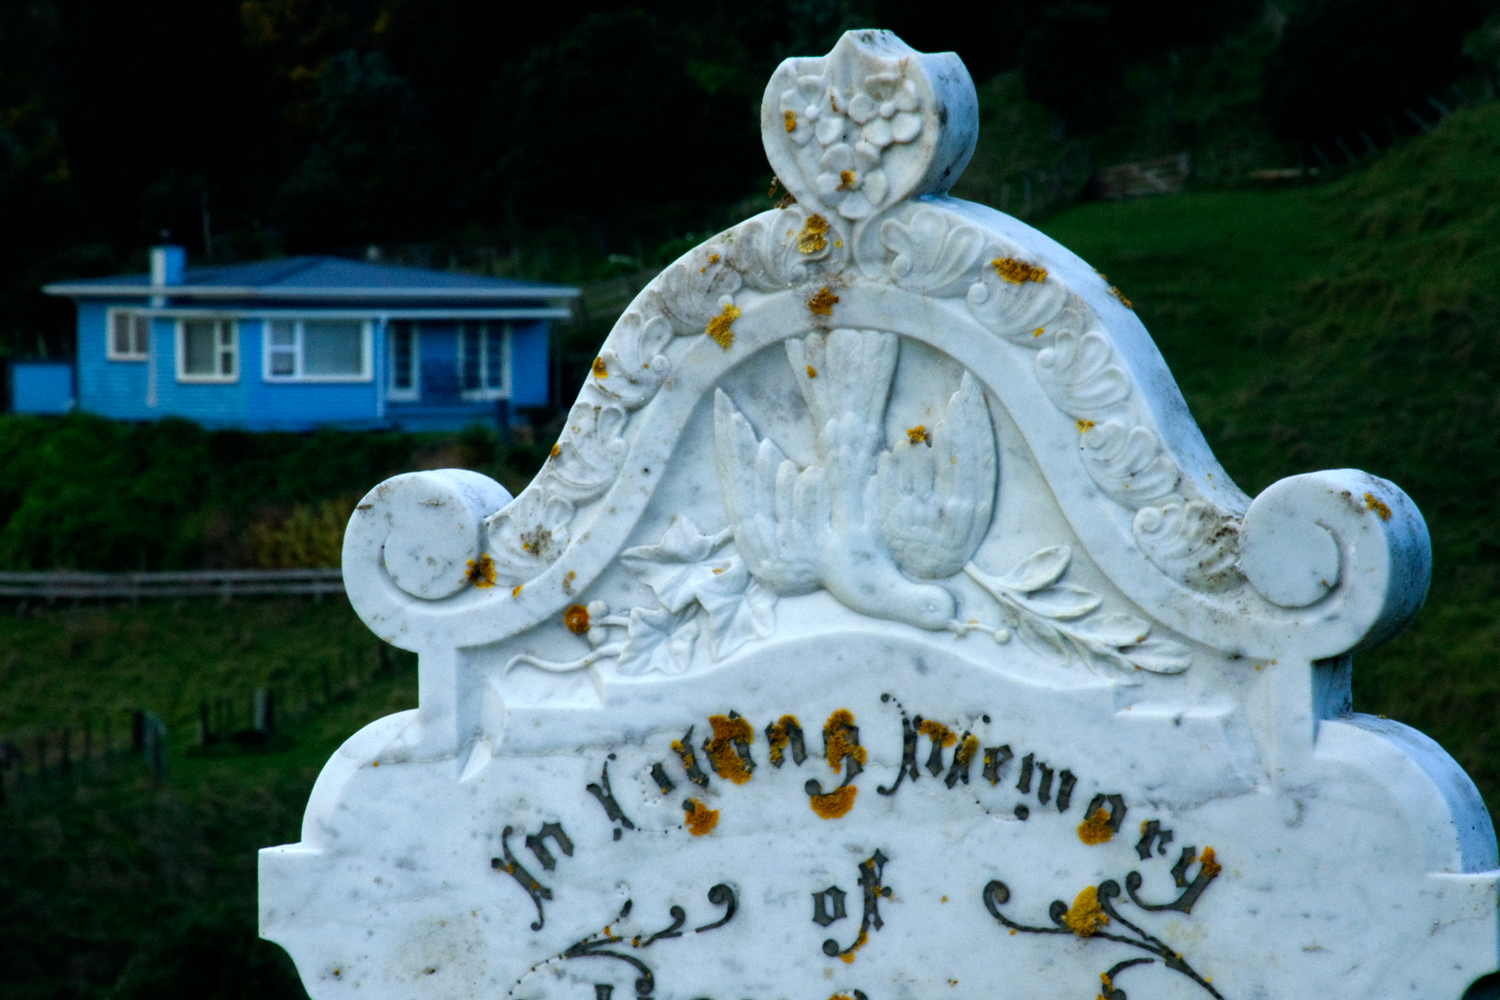 Memento mori 9: In loving memory